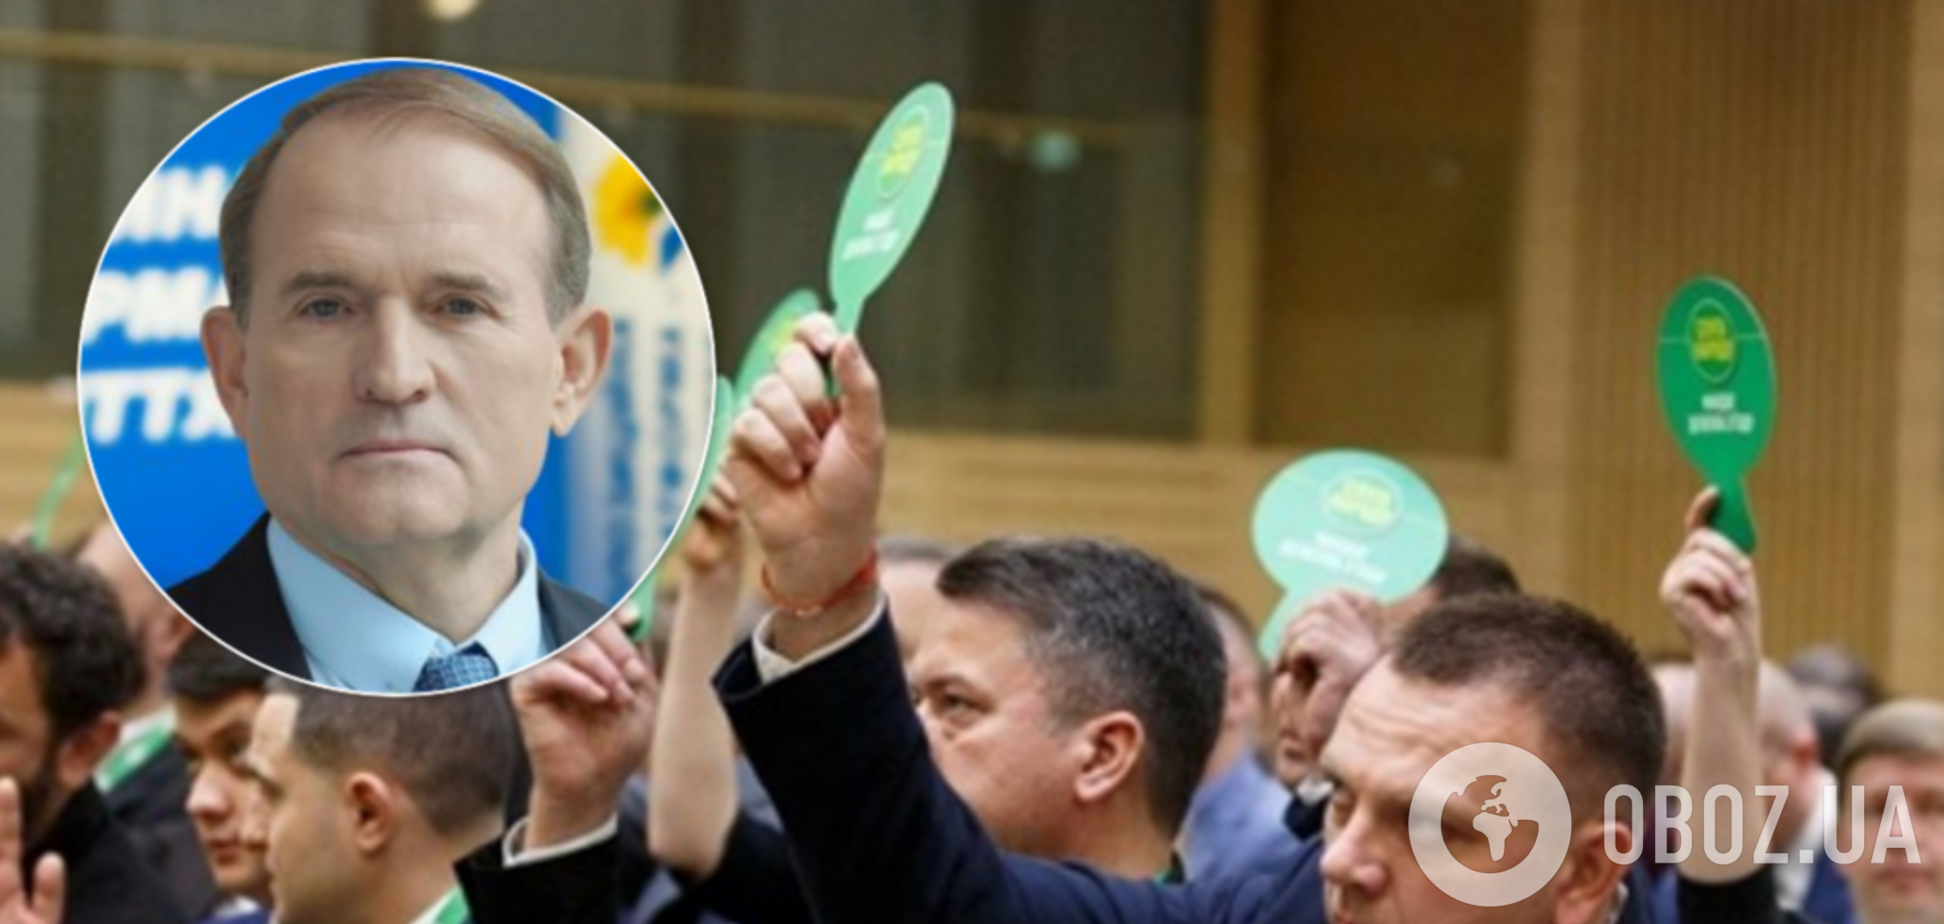 'Слуги' Зеленского и фракция Медведчука образовали первую коалицию в Раде